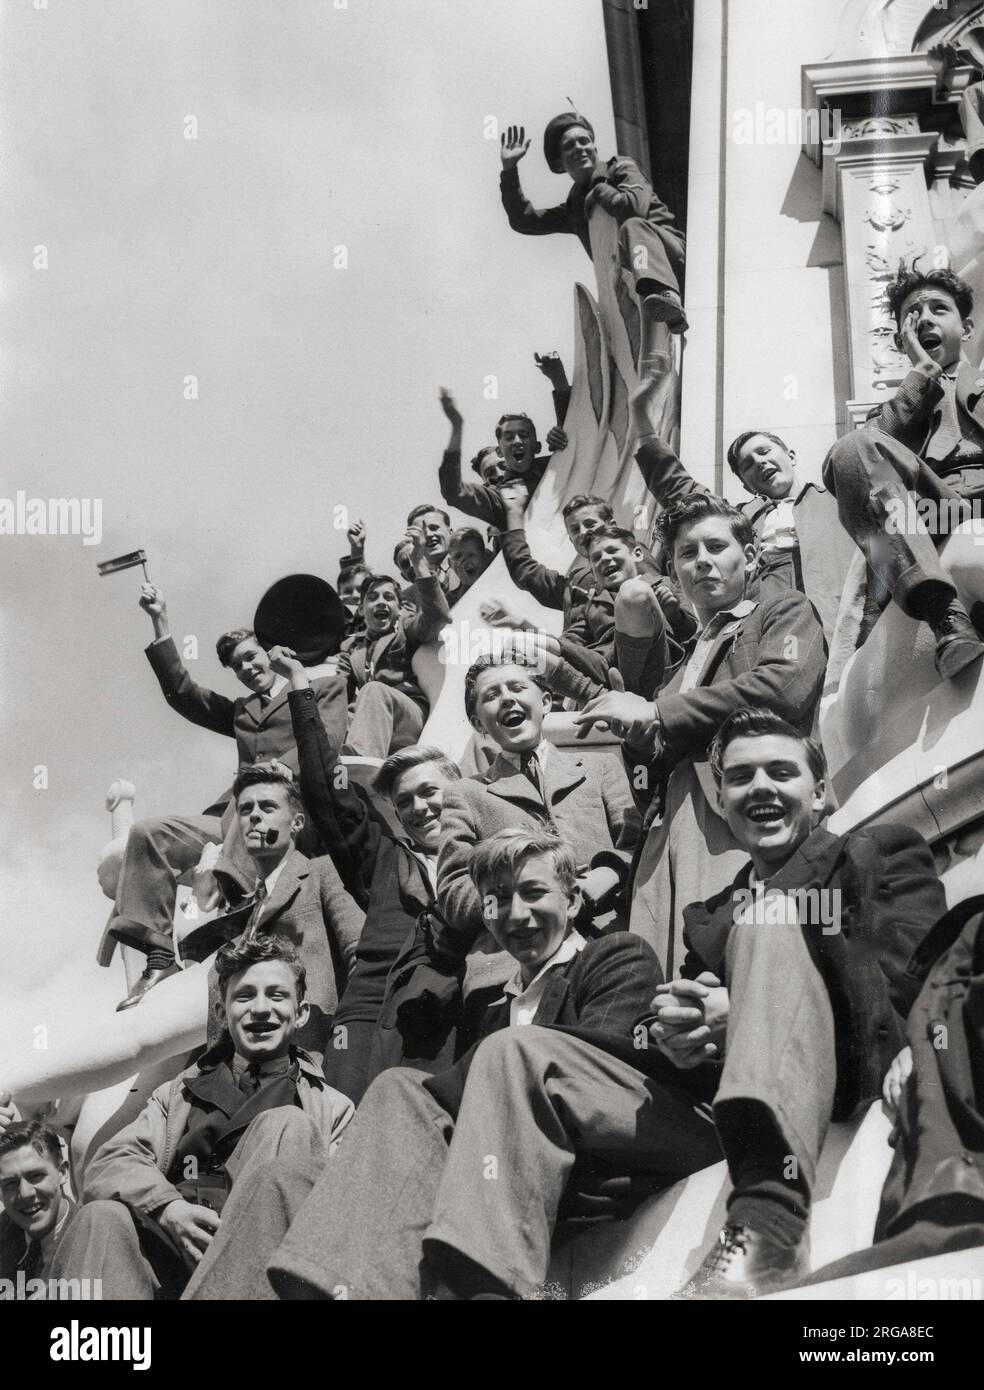 Photographie de la Seconde Guerre mondiale - foules à Londres le jour du VE, fin de la guerre en Europe Banque D'Images